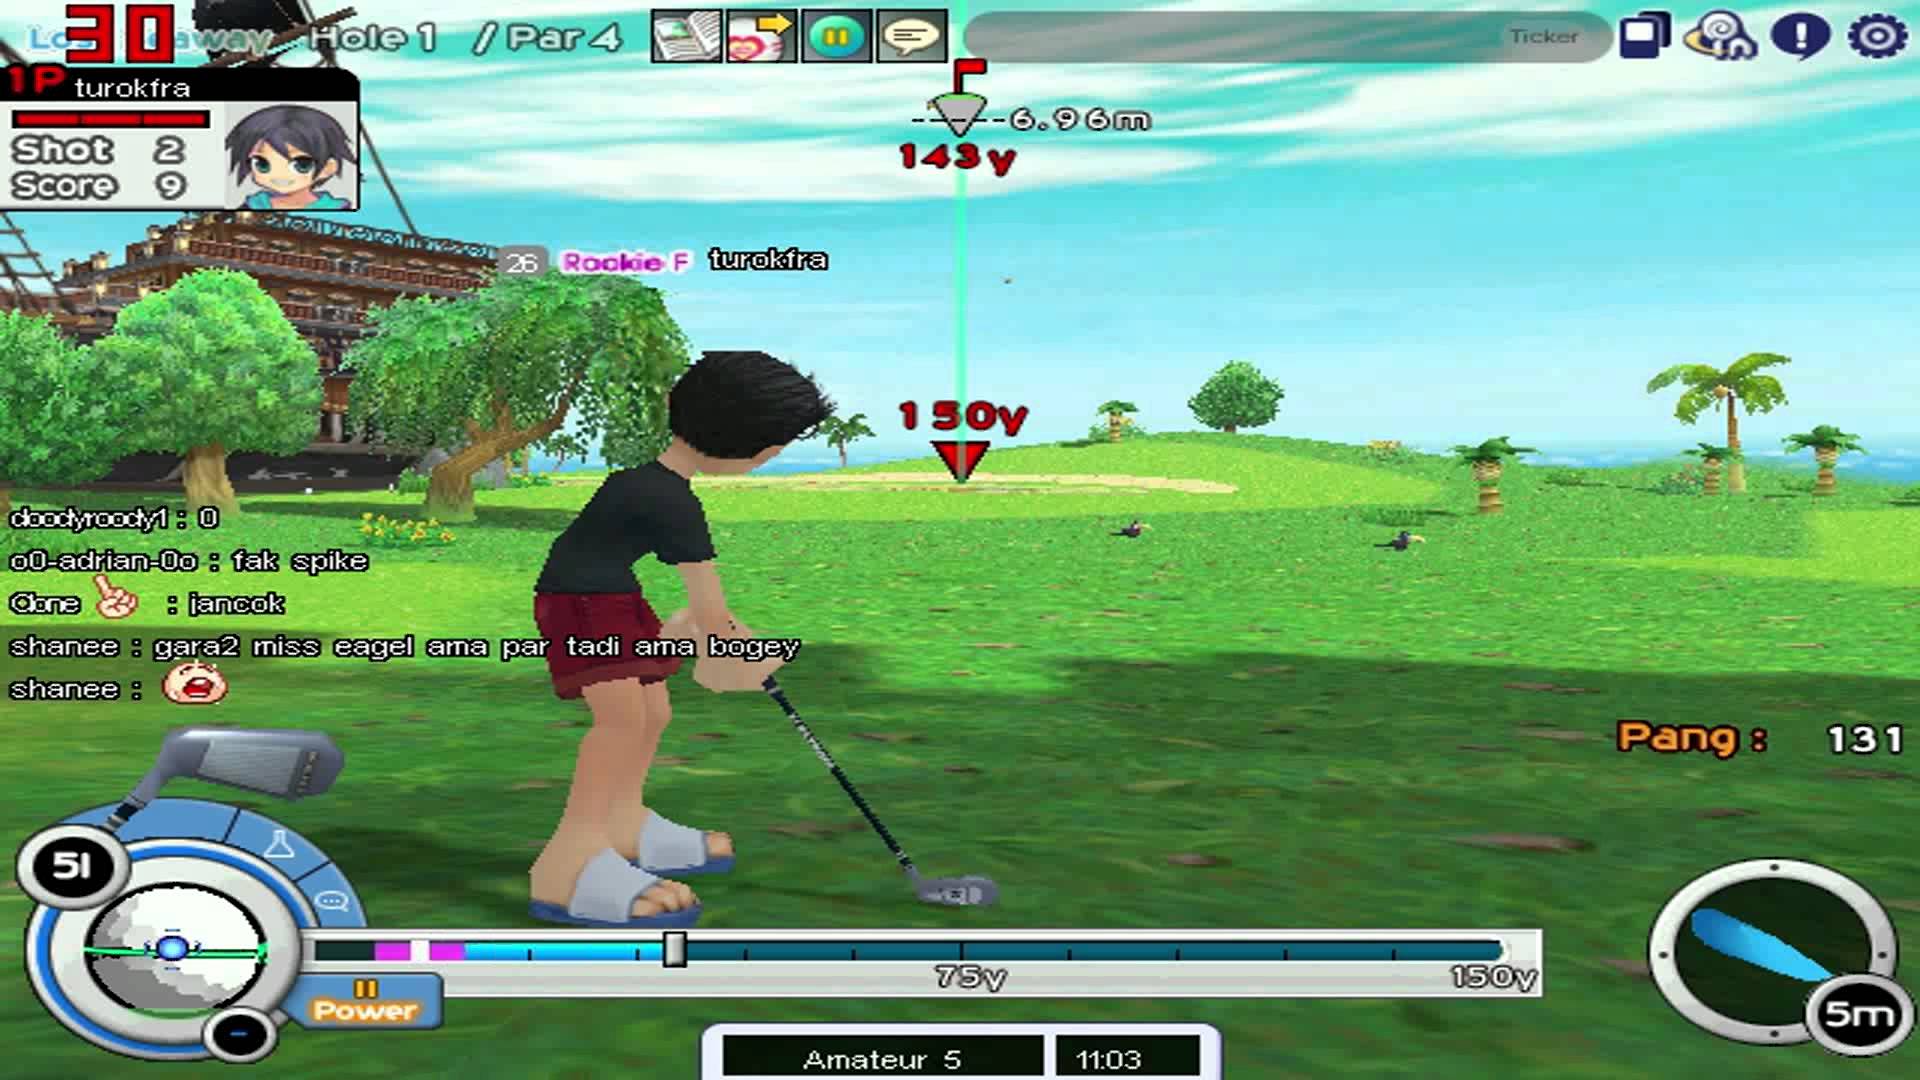 Pangya Golf Pics, Anime Collection